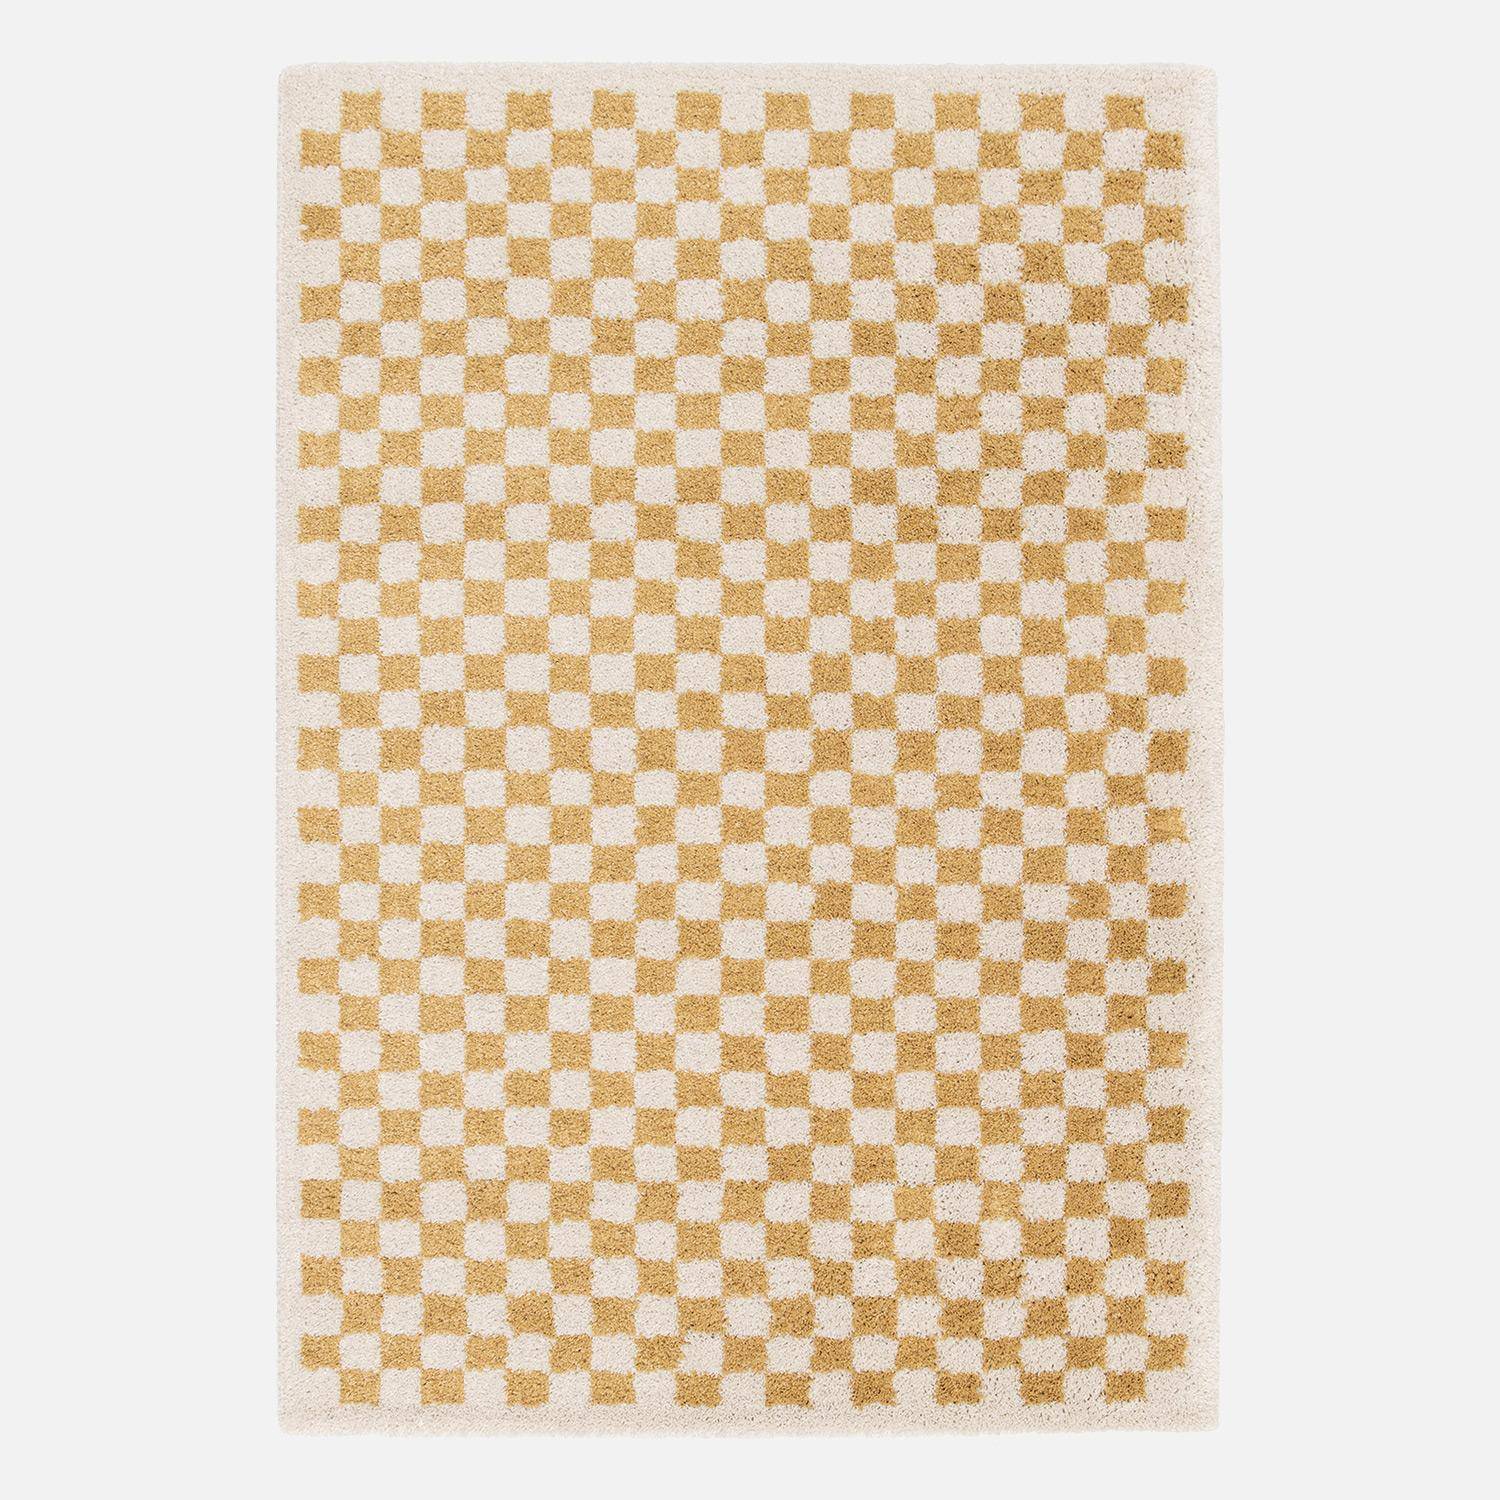 Alfombra interior de tablero de ajedrez en amarillo mostaza y crema, Taylor, 160x230 cm Photo1